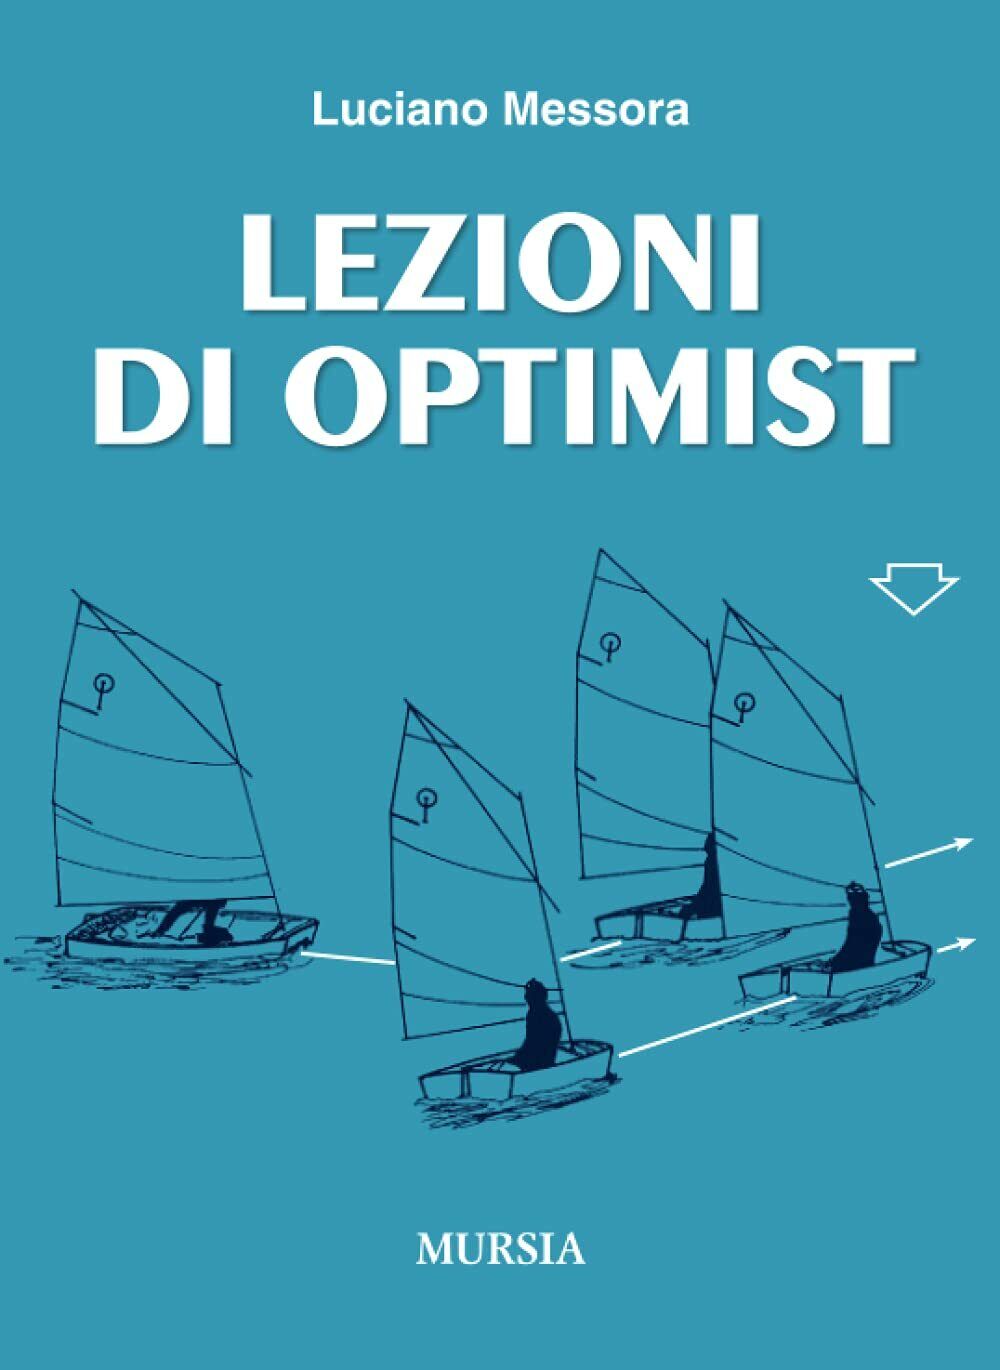 Lezioni di Optimist - Luciano Messora - Ugo Mursia, 2015